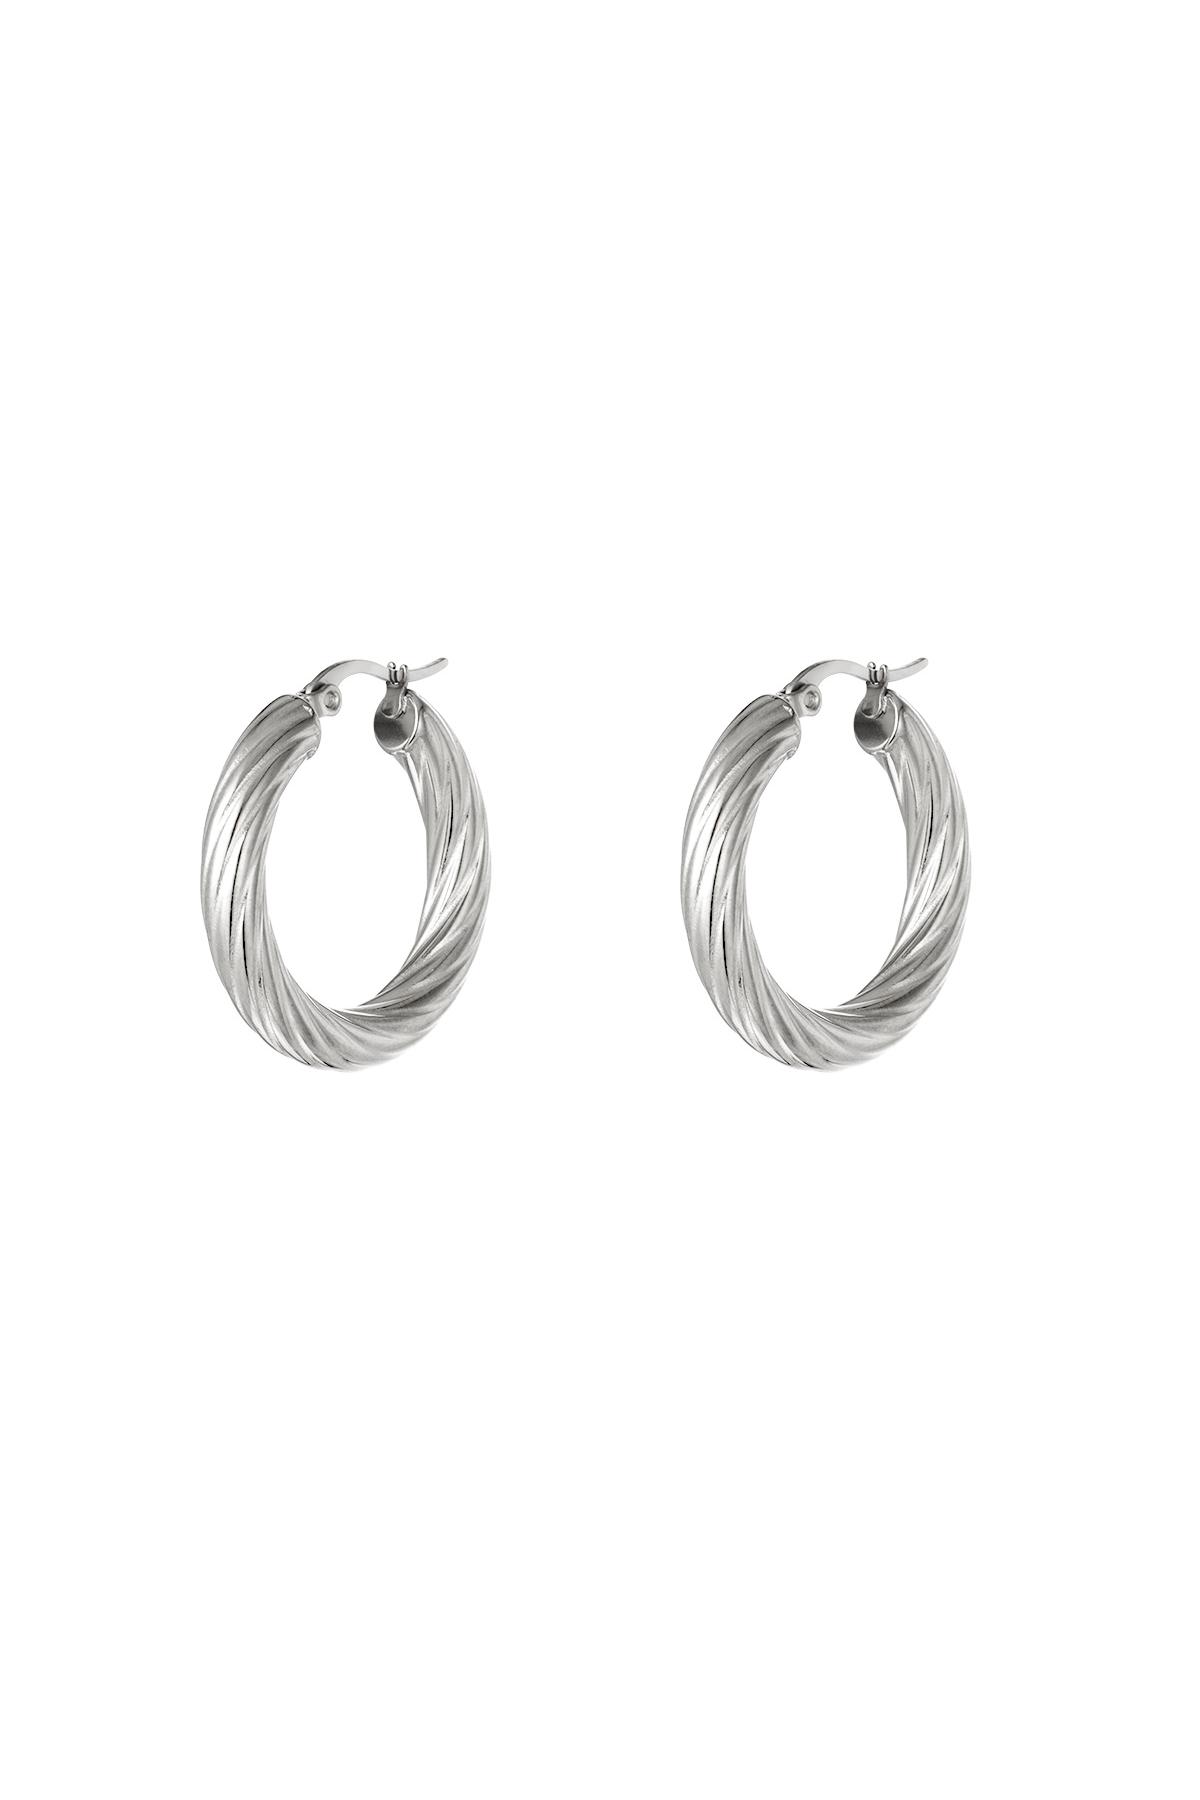 Stainless steel twisted hoop earrings Silver